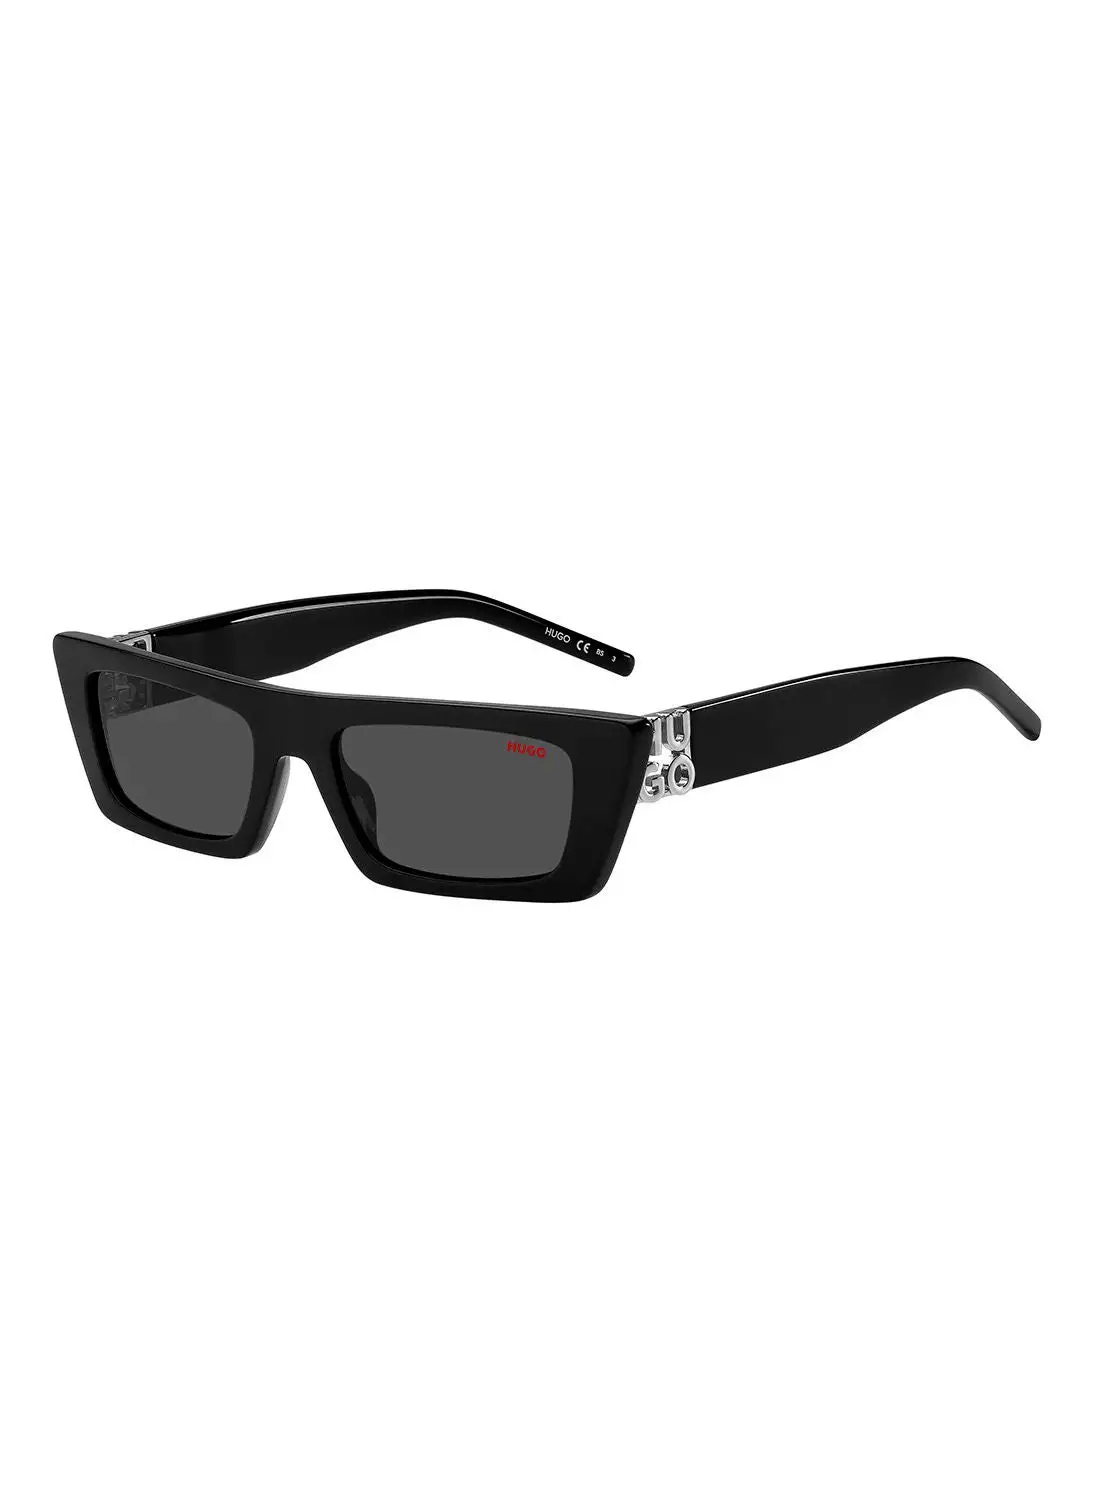 HUGO Women's UV Protection Sunglasses - Hg 1256/S Black 52 - Lens Size: 52 Mm